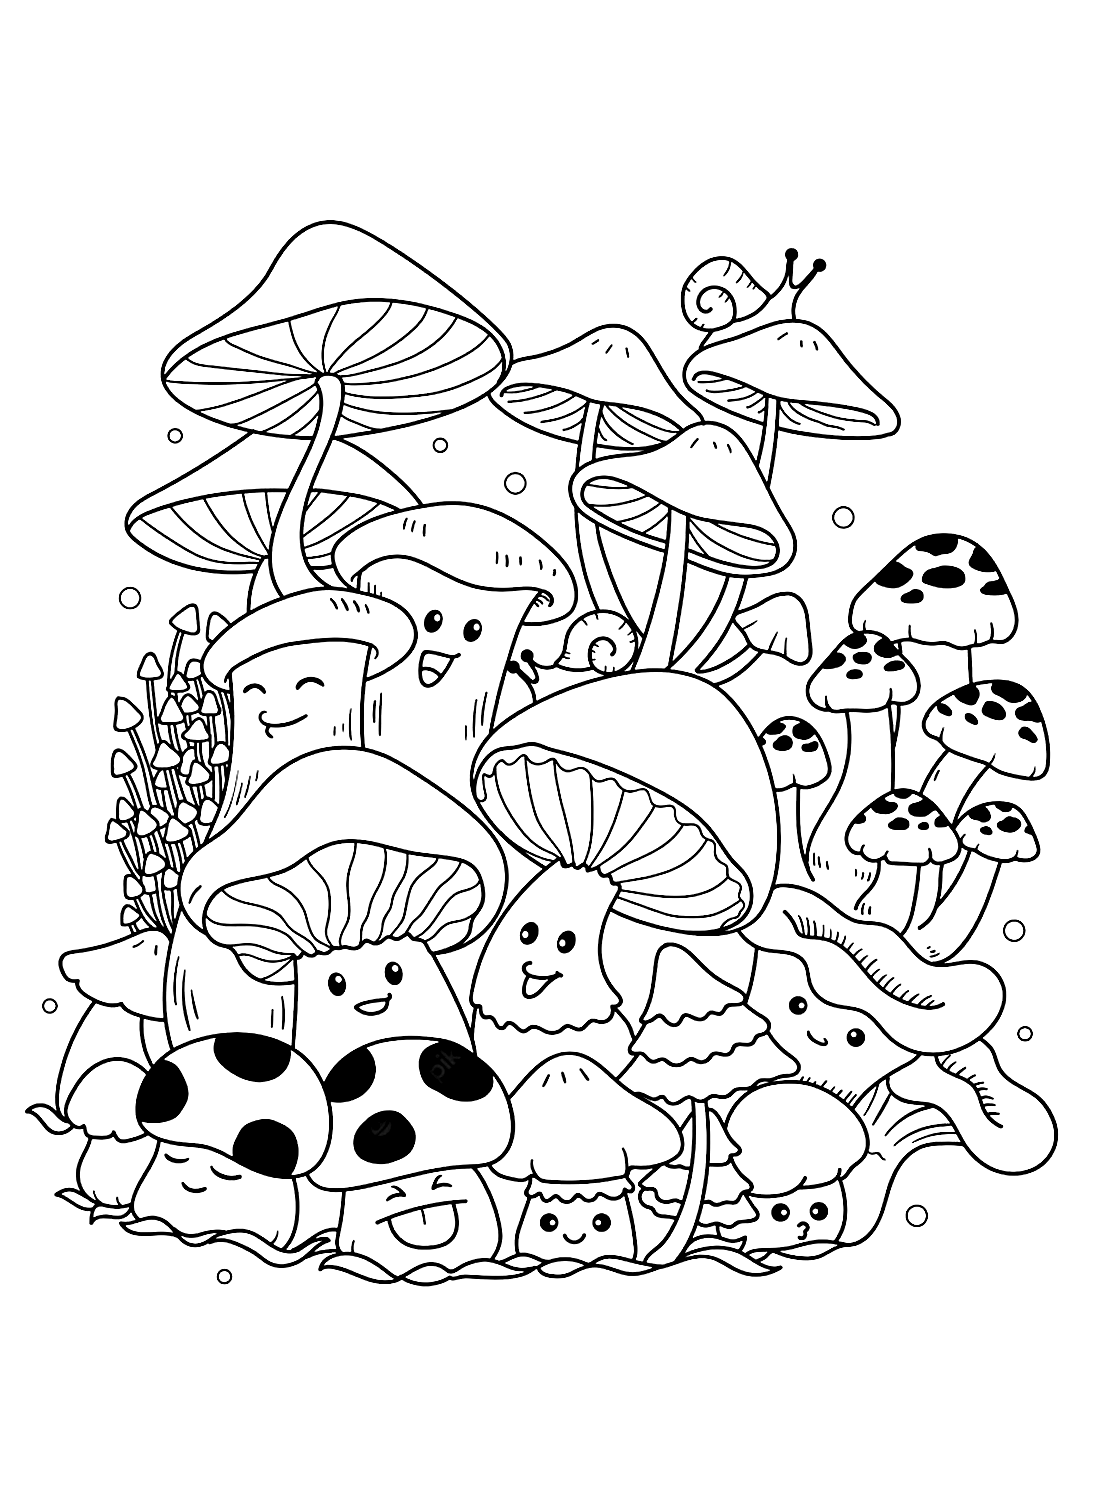 Распечатки забавных грибов от Mushroom